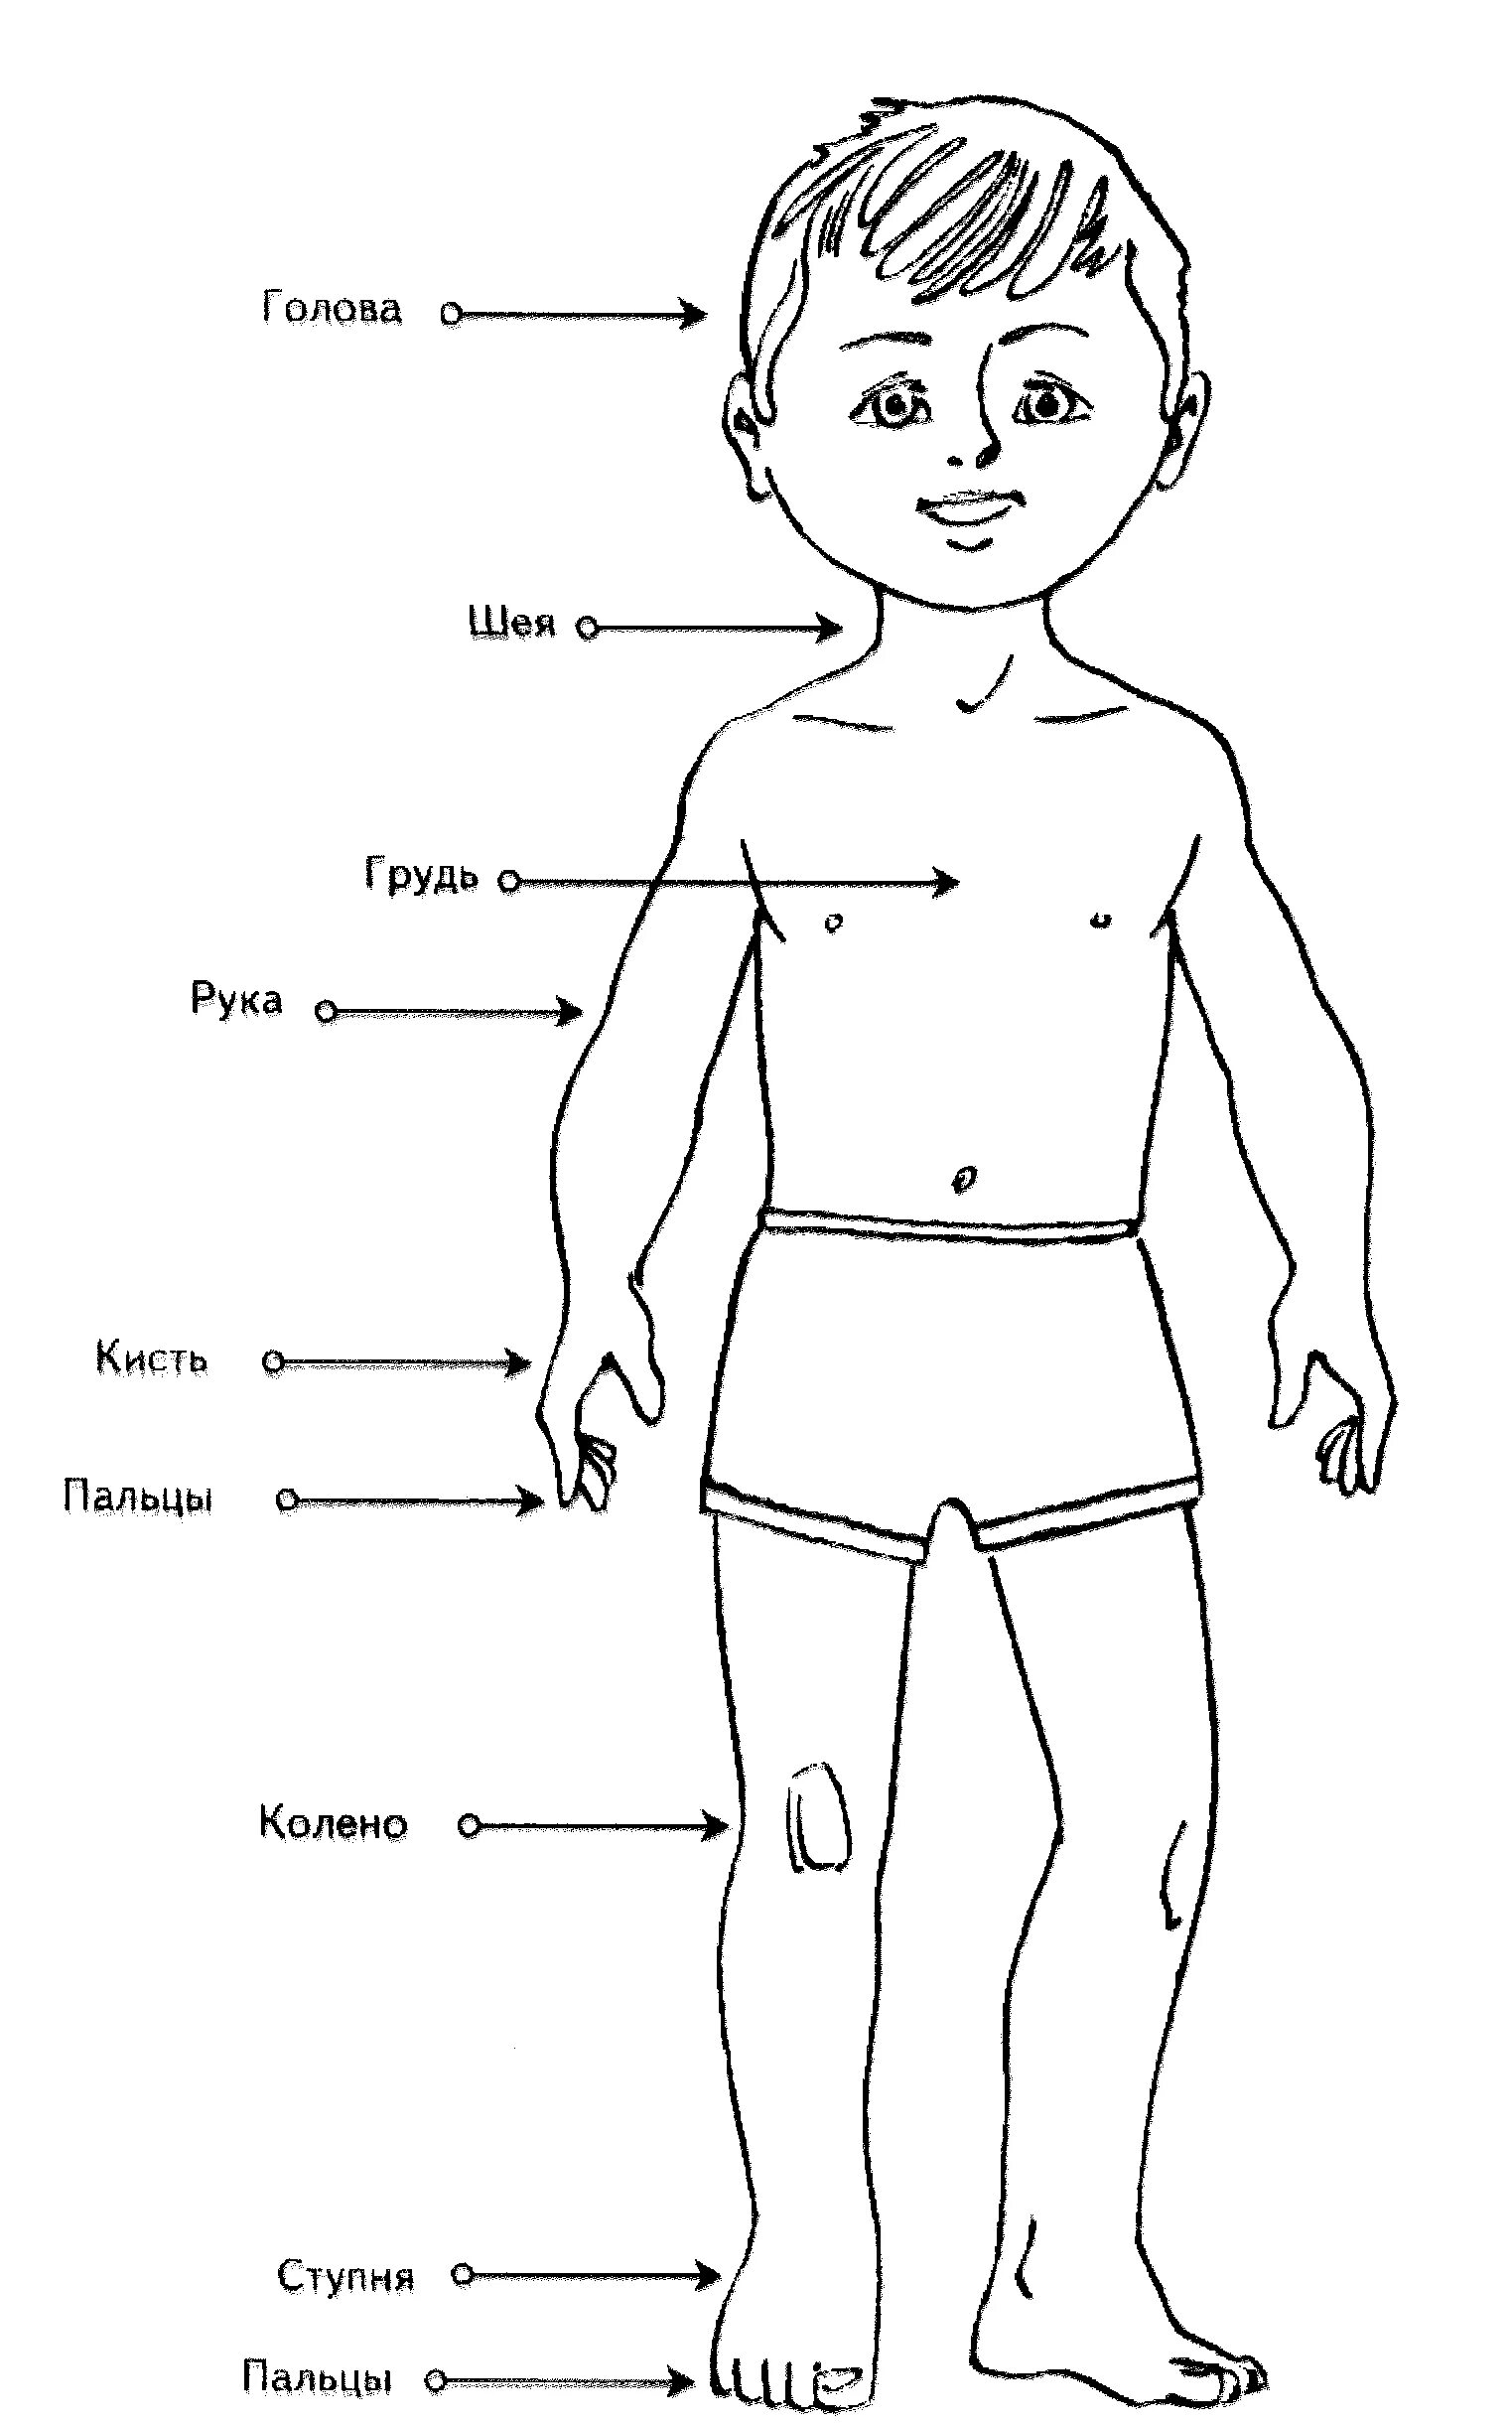 Части тела — картинки для детей дошкольного возраста, задания, игры